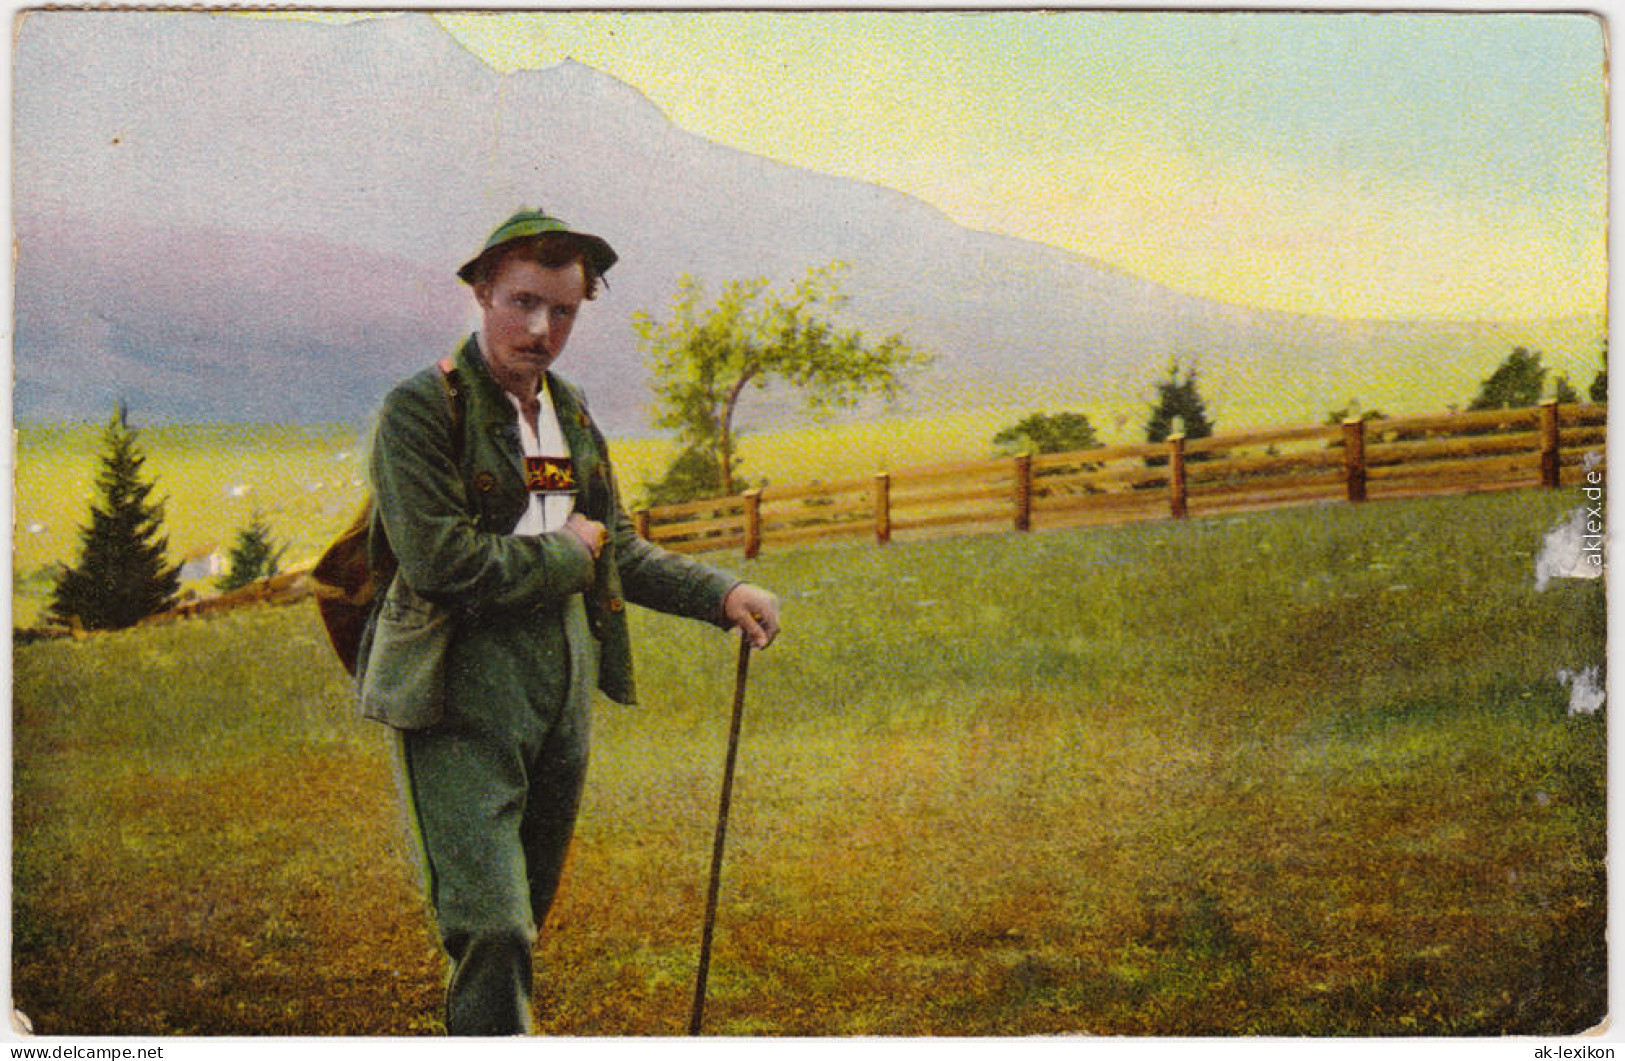  Wanderer In Tracht - Alm - Liederkarte Von Einem Bergli Muss I Scheiden 1913  - Music